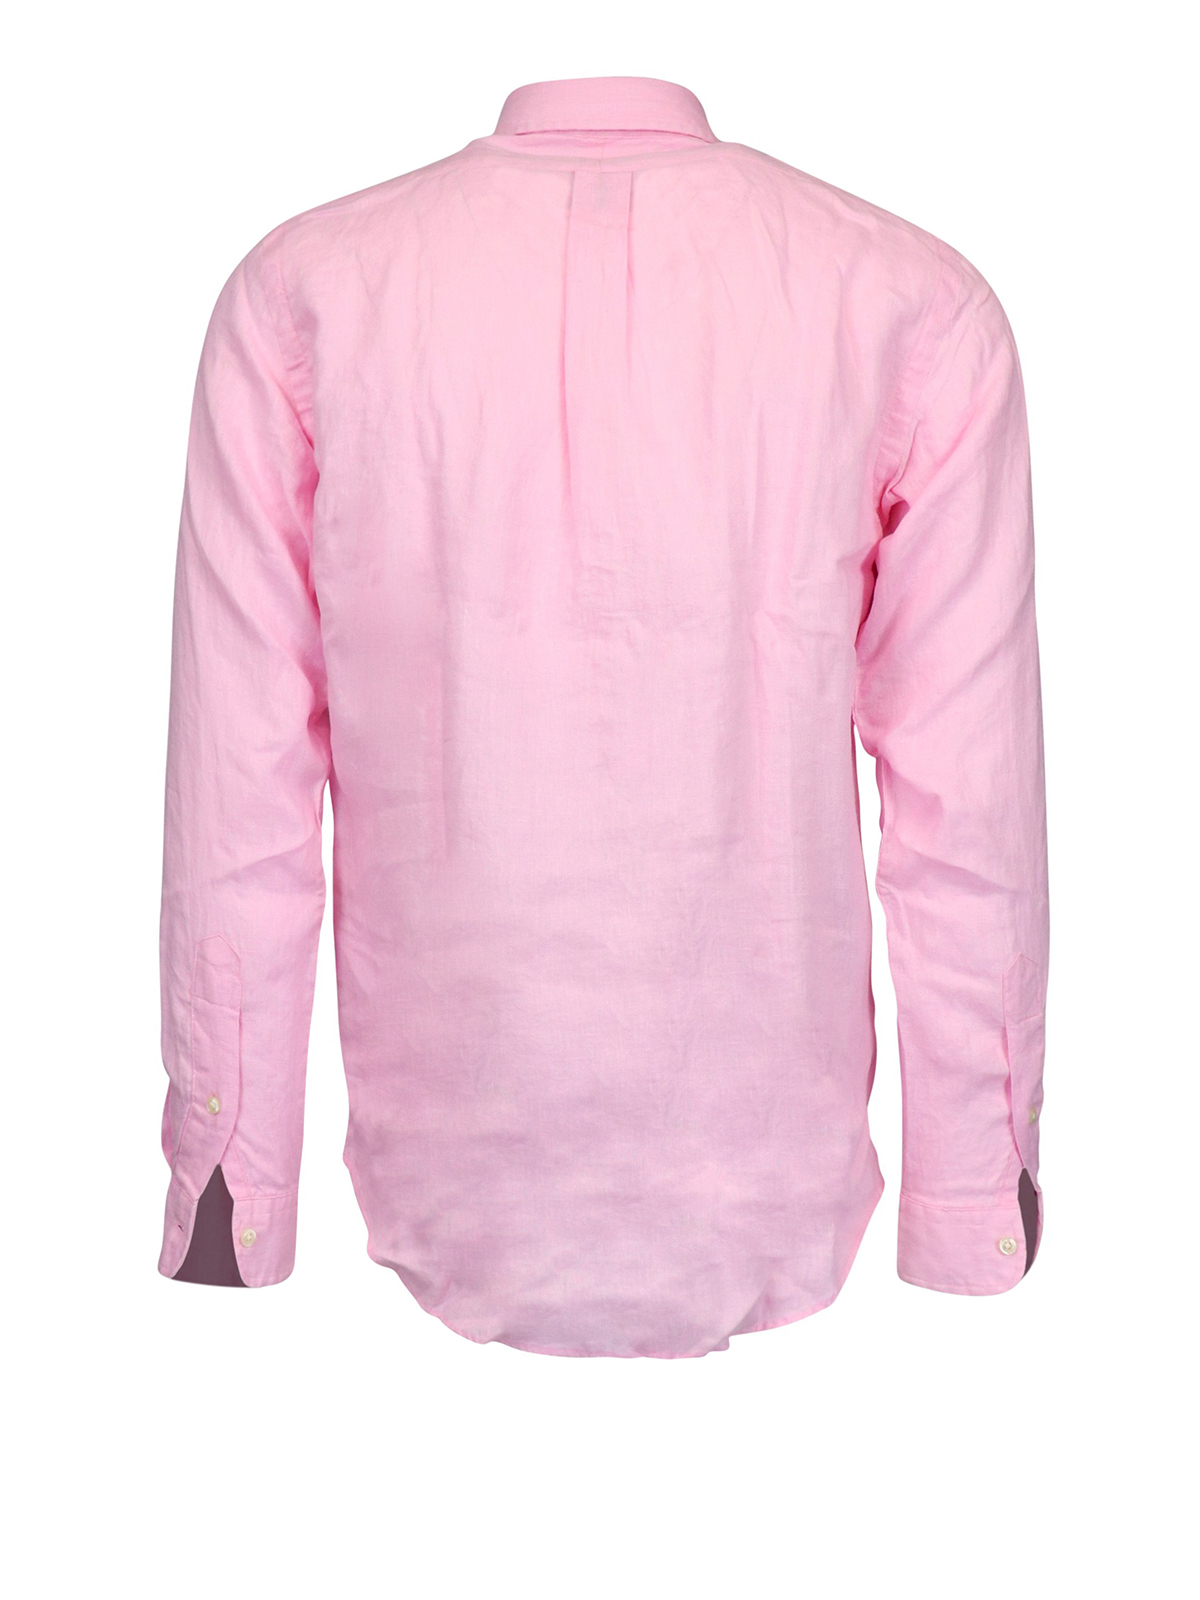 Shirts Polo Ralph Lauren - Pink linen shirt - 710794141006